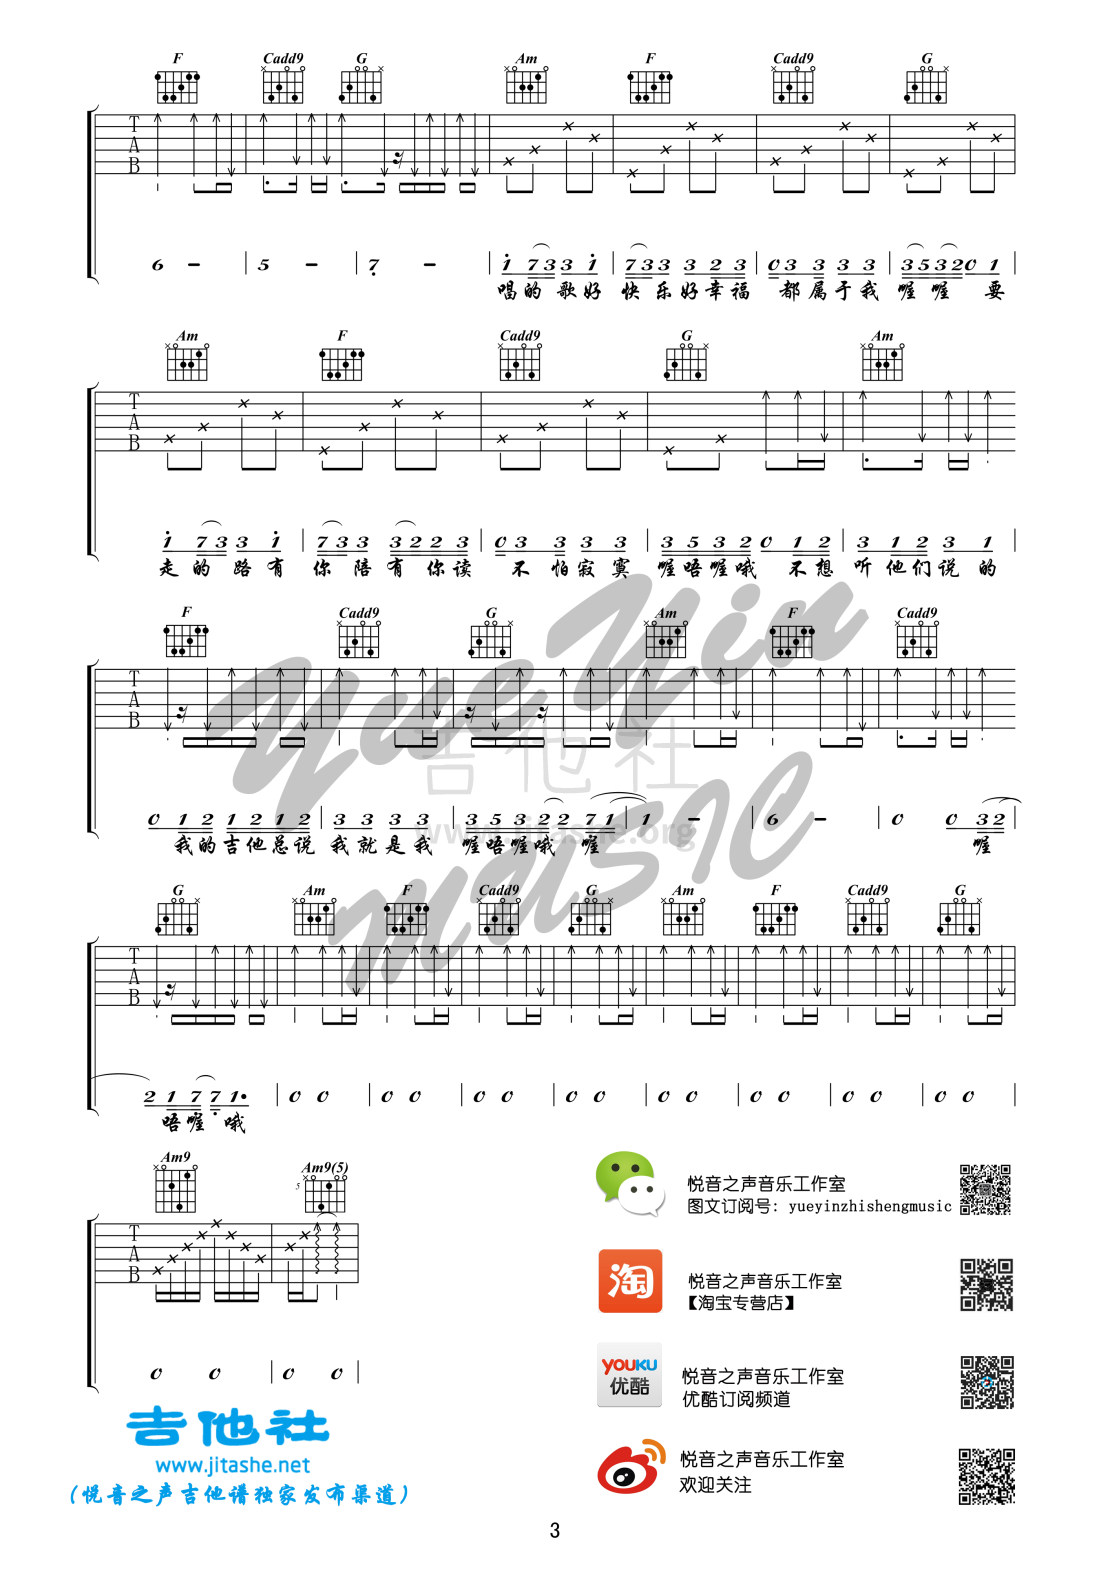 打印:歌路（悦音之声吉他教学系列 刘瑞琦系列第一季）1吉他谱_刘瑞琦_3.jpg